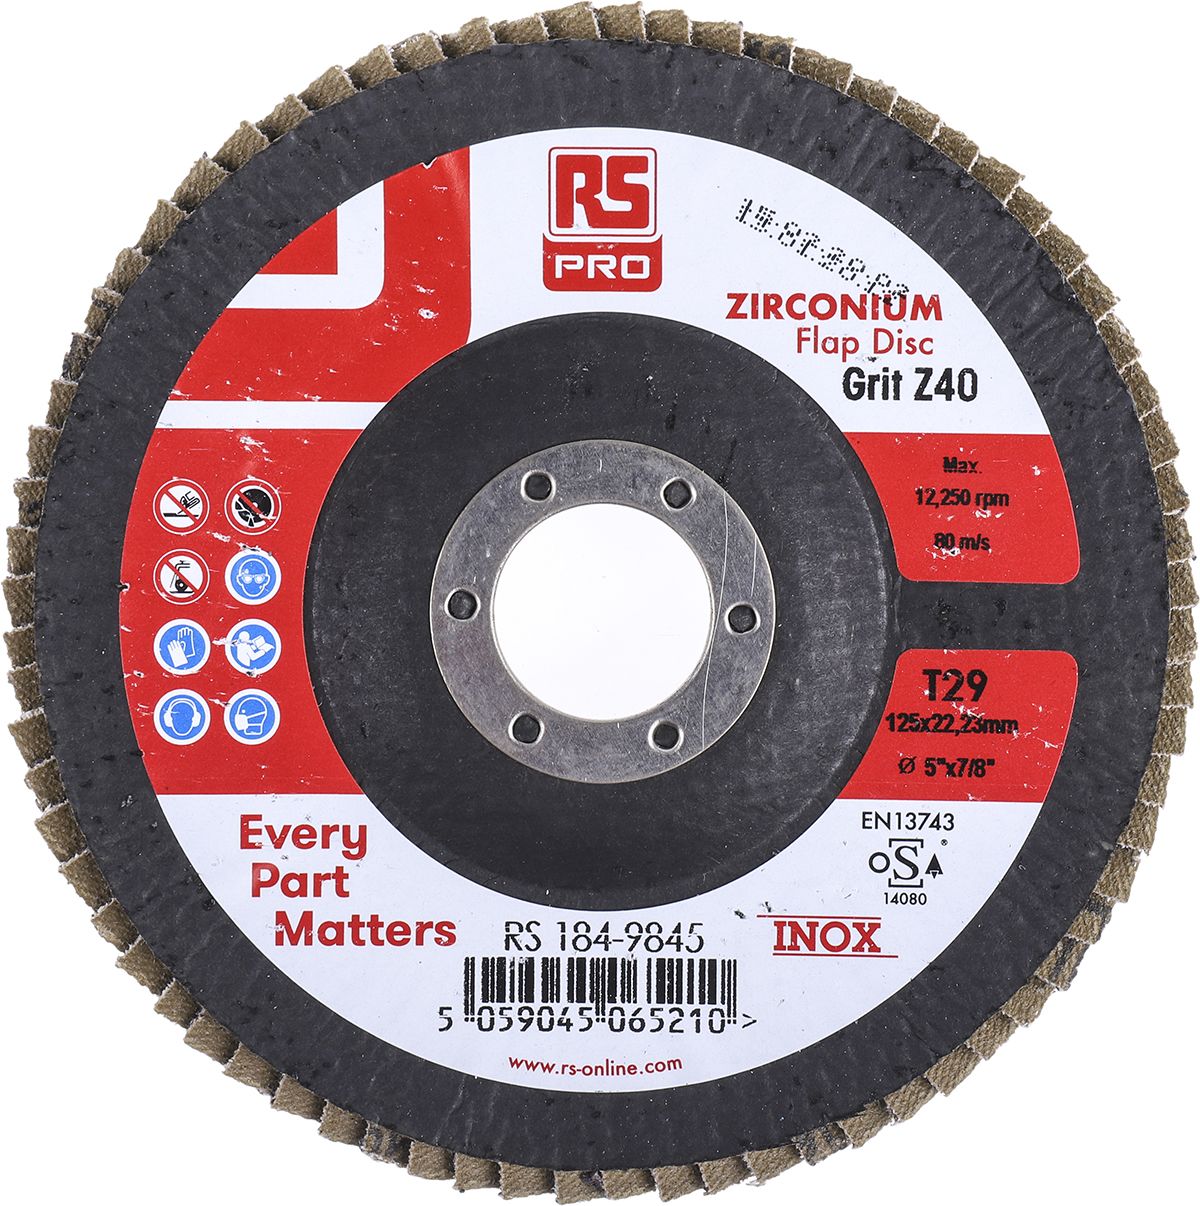 RS PRO Zirconium Dioxide Flap Disc, 125mm, P40 Grit